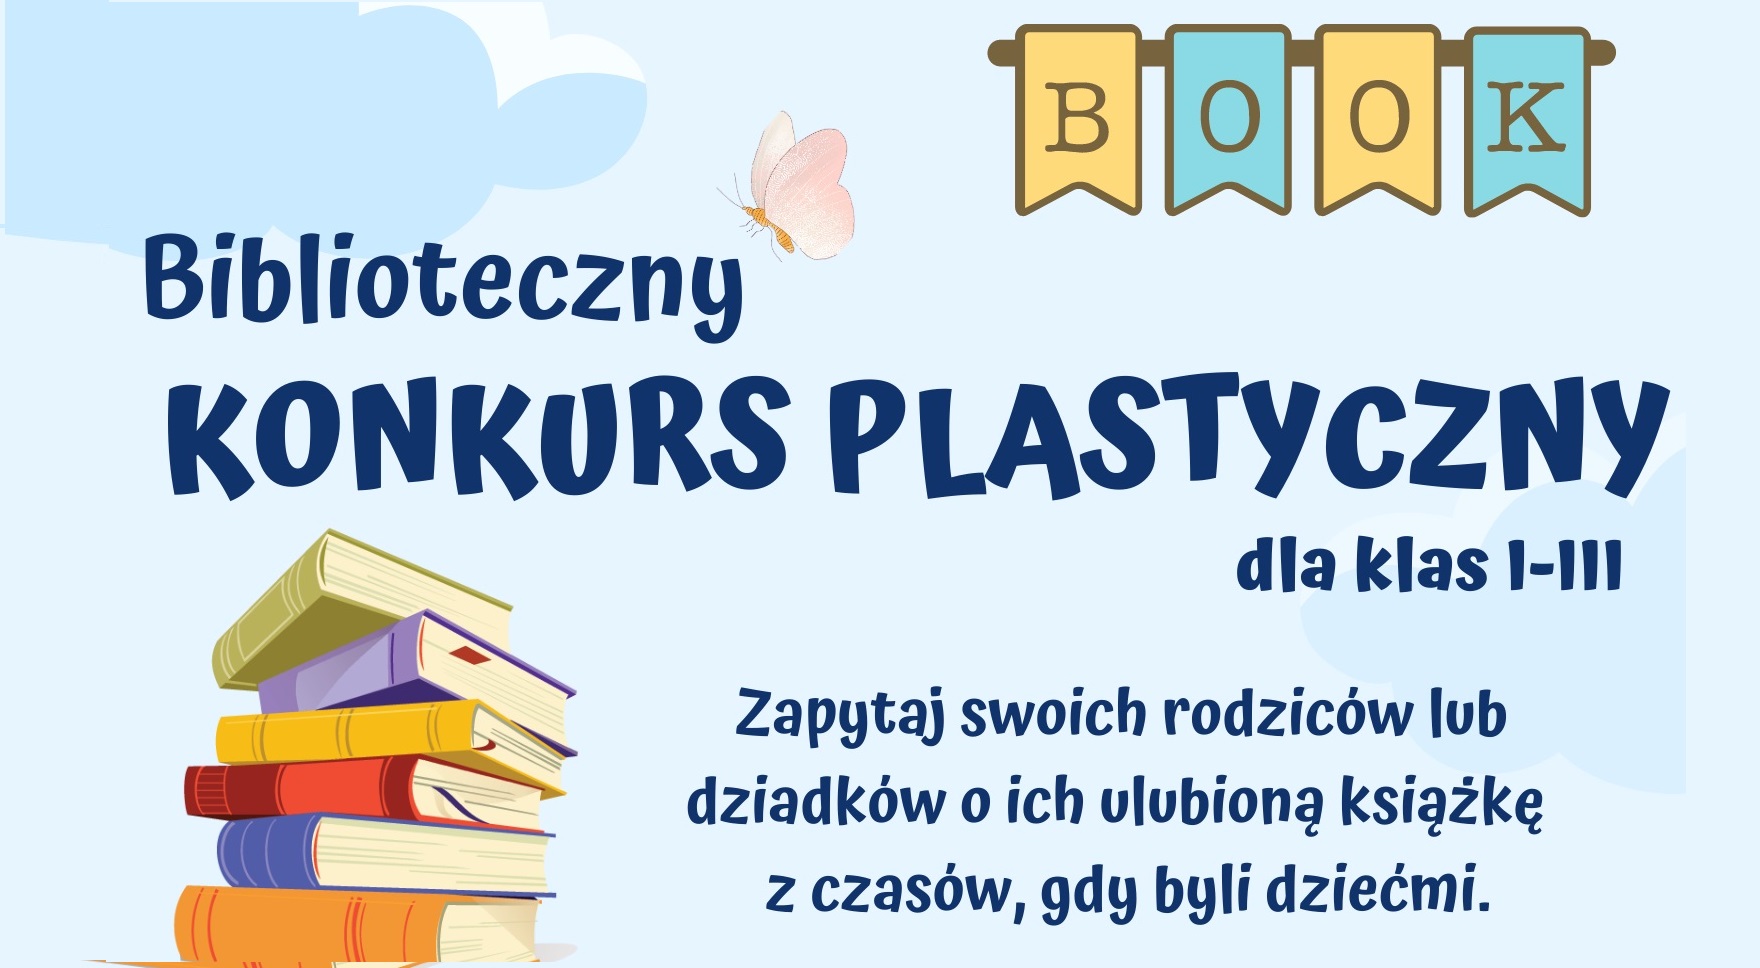 Biblioteczny konkurs plastyczny dla klas 1-3 Zapytaj swoich rodziców lub dziadków o ich ulubioną książkę z czasów, gdy byli dziećmi.